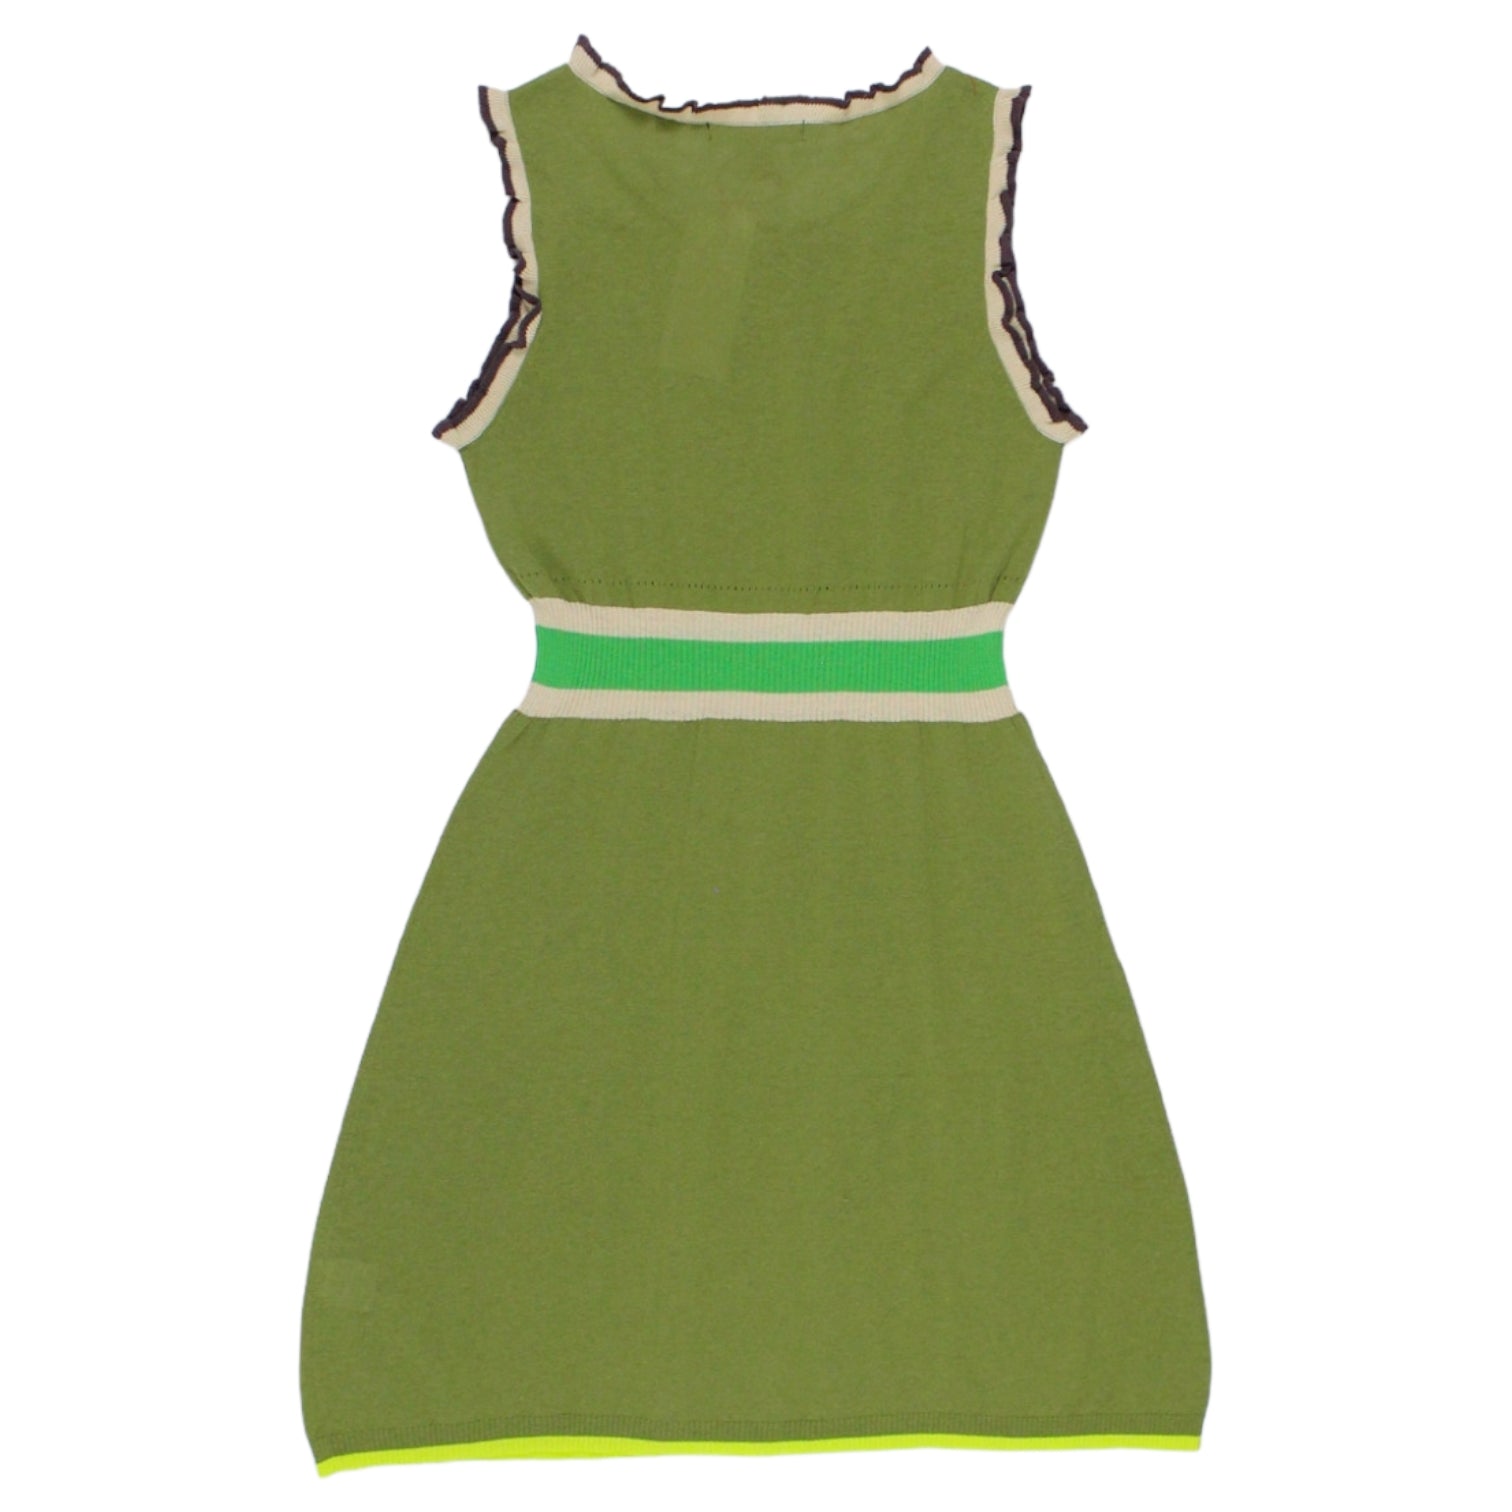 Orla Kiely Green Knit Vest Dress